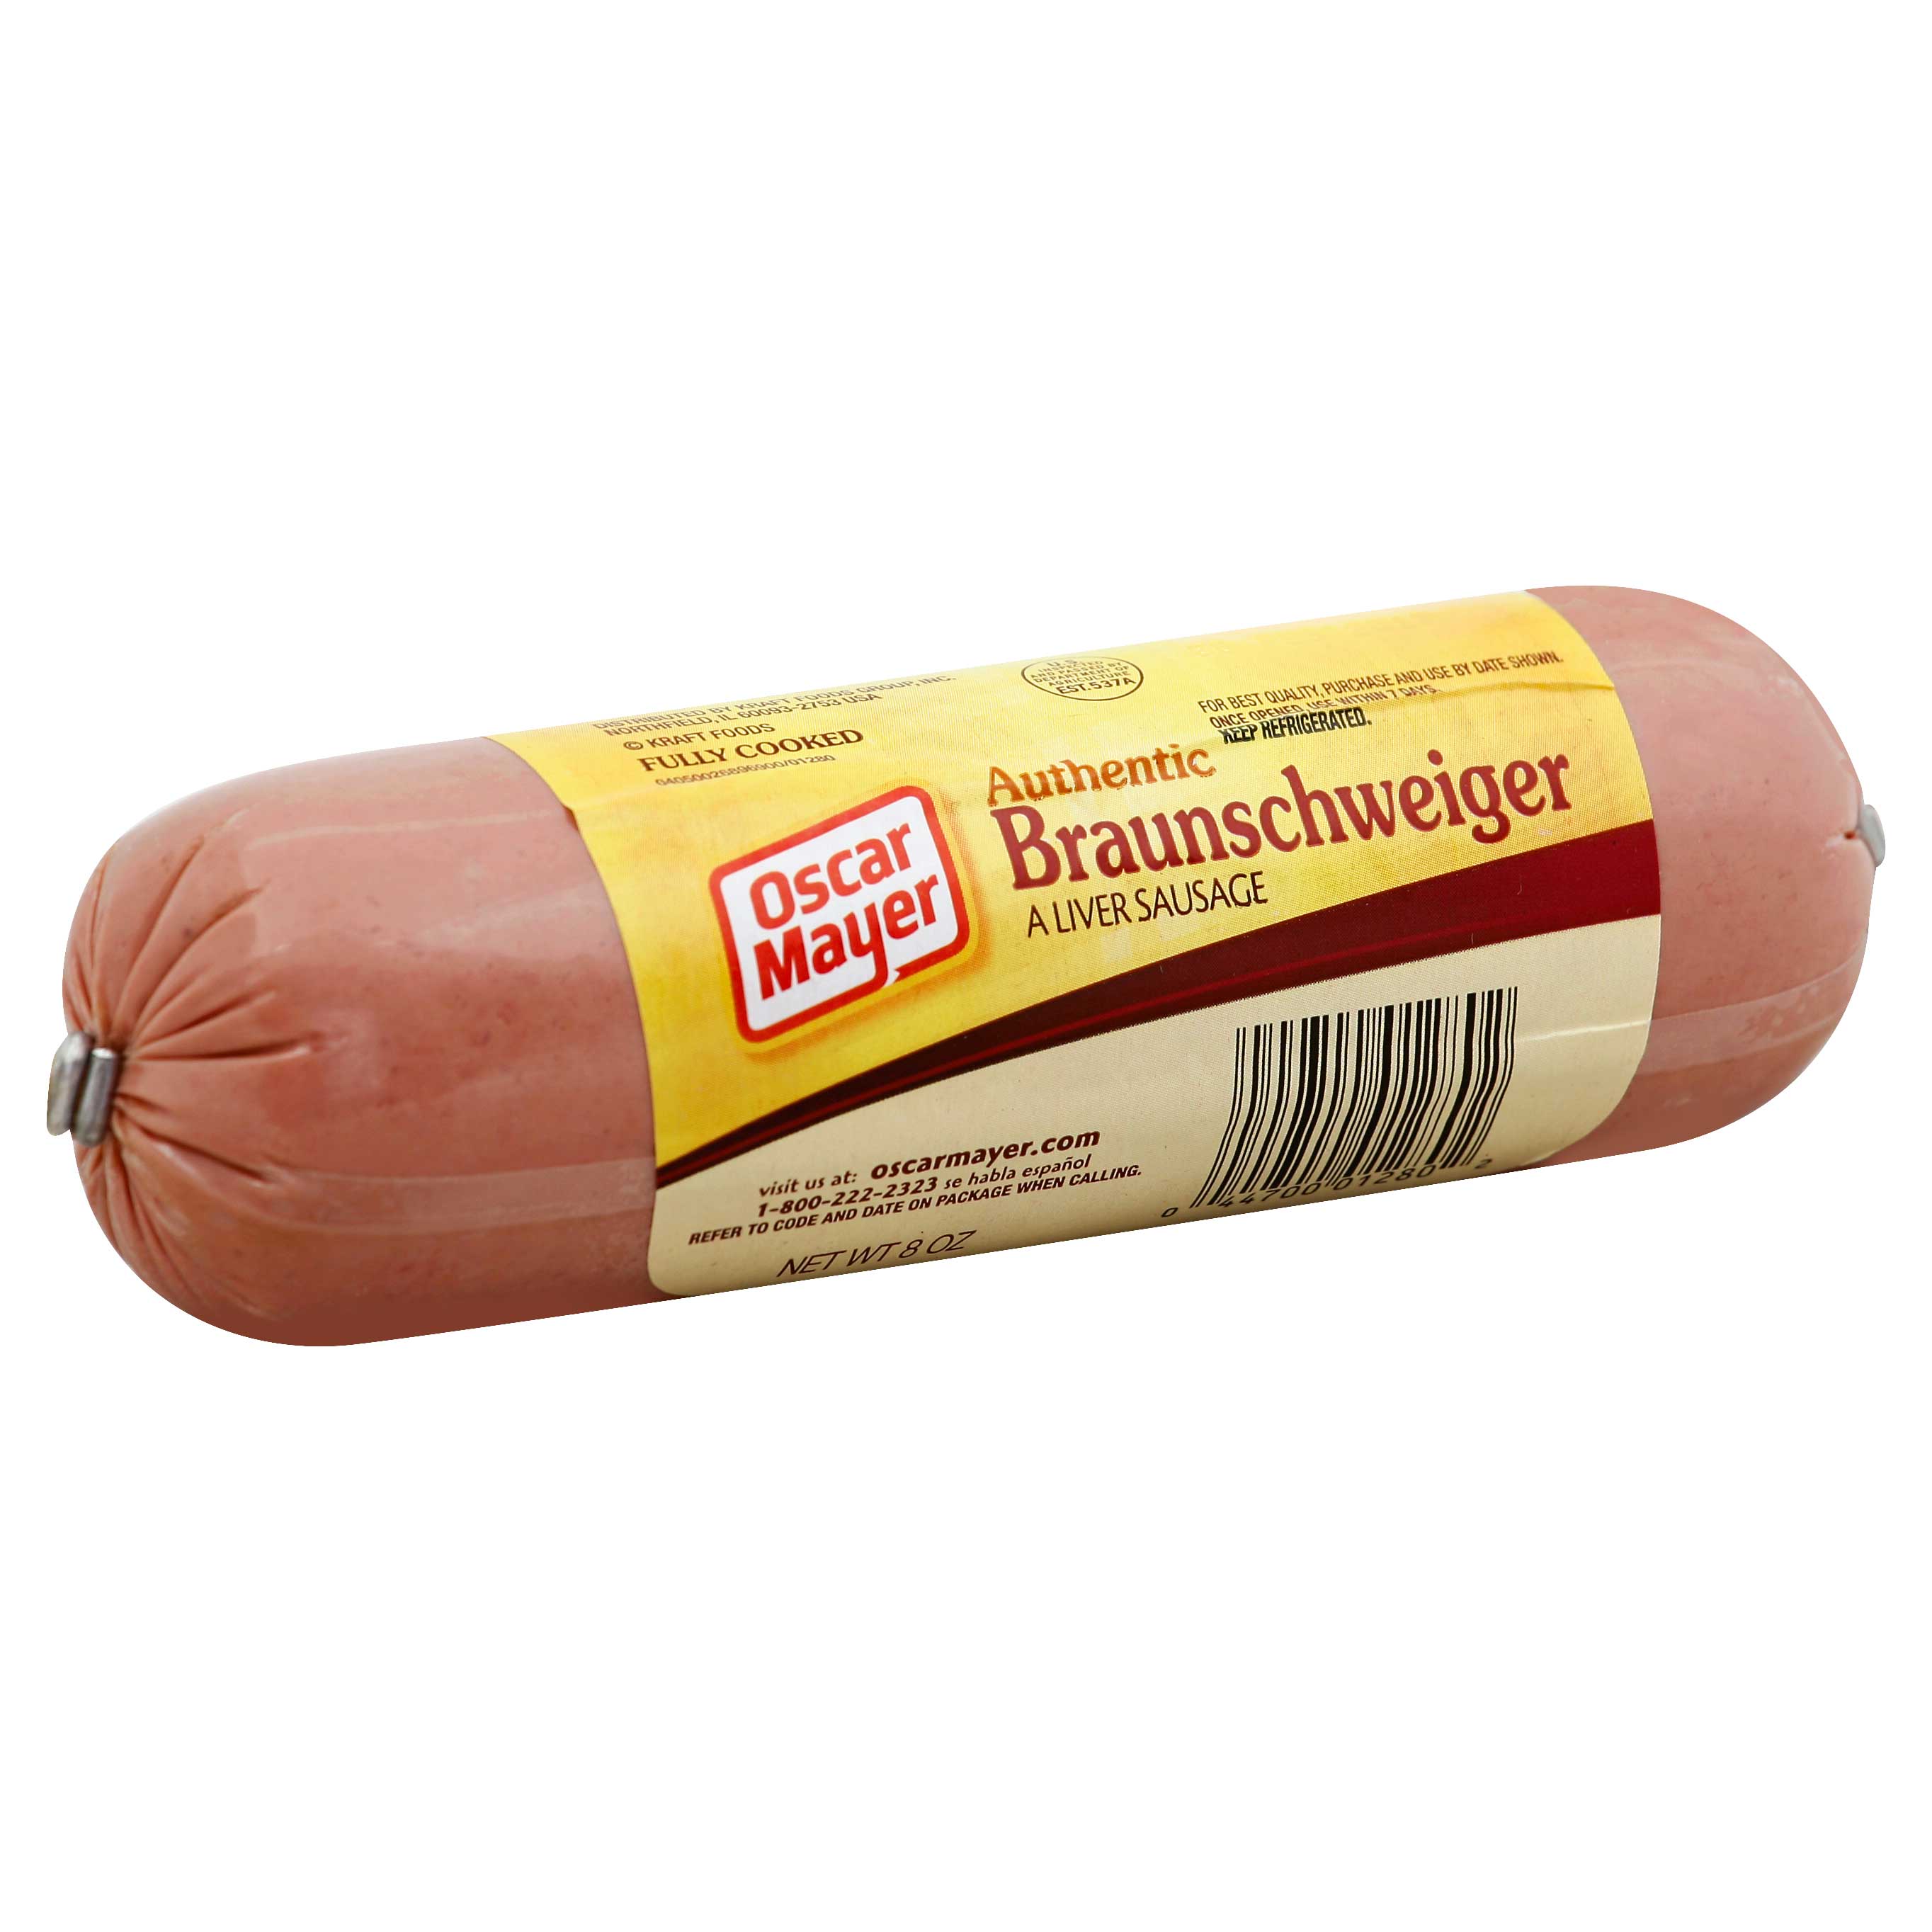 Kraft Oscar Mayer Braunschweiger Liver Sausage - Meat, 8 Ounce -- 12 per case.